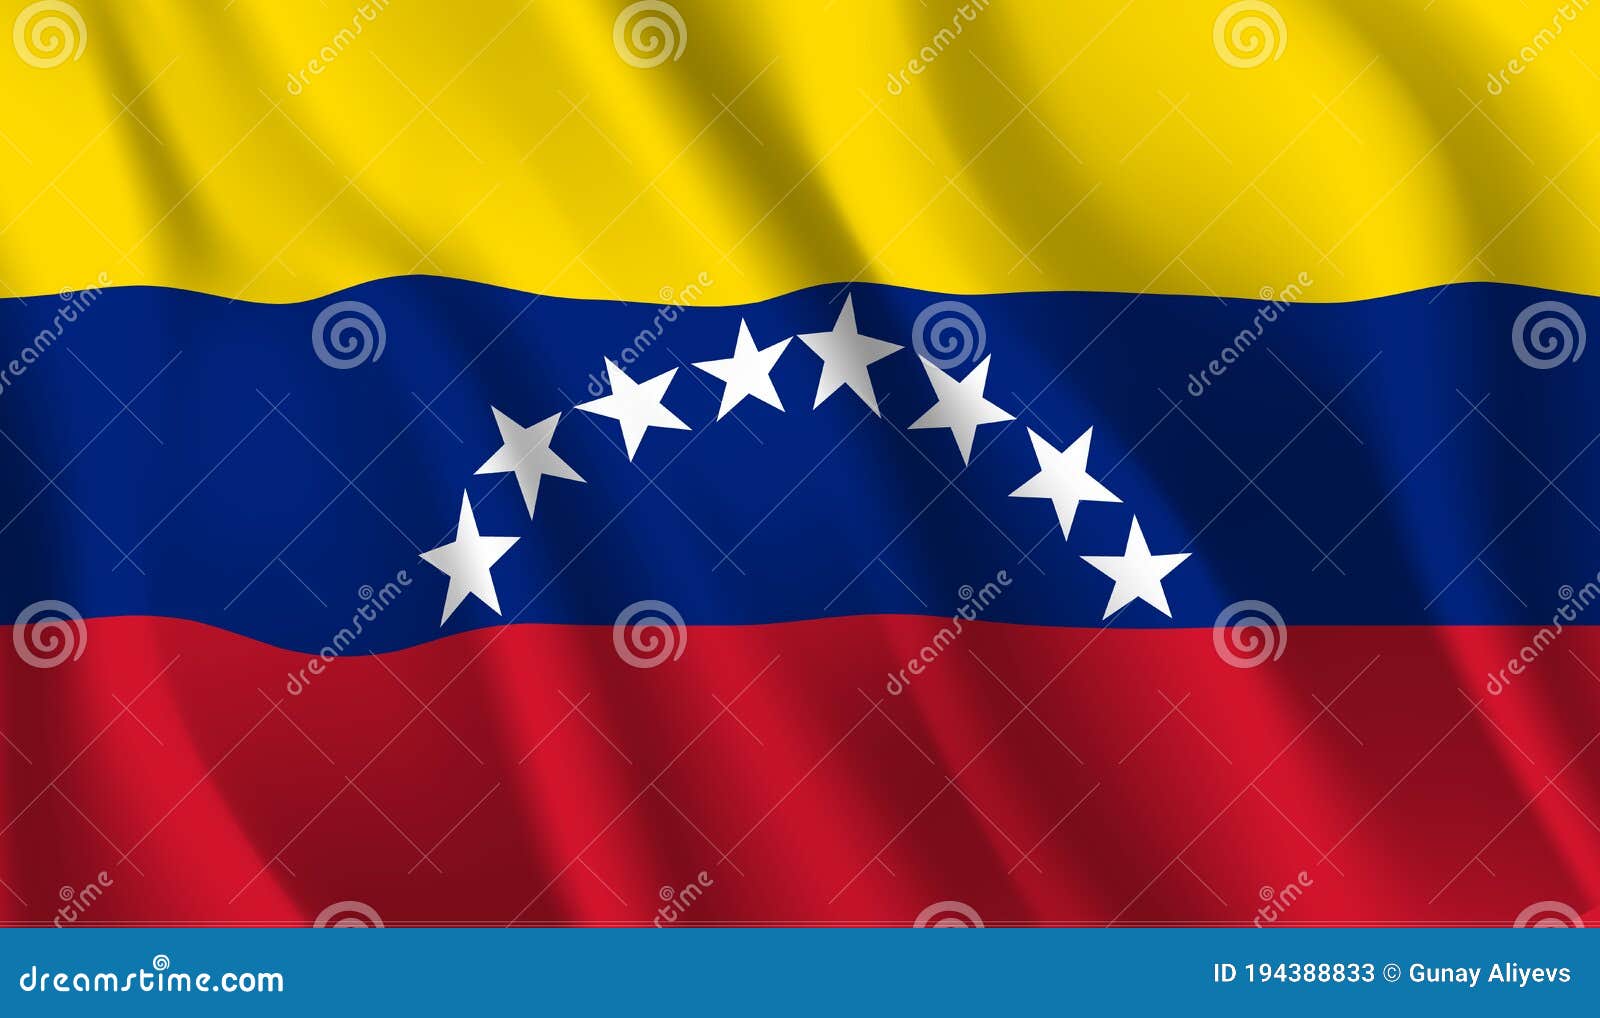 委内瑞拉国旗素材图片下载-素材编号00647754-素材天下图库